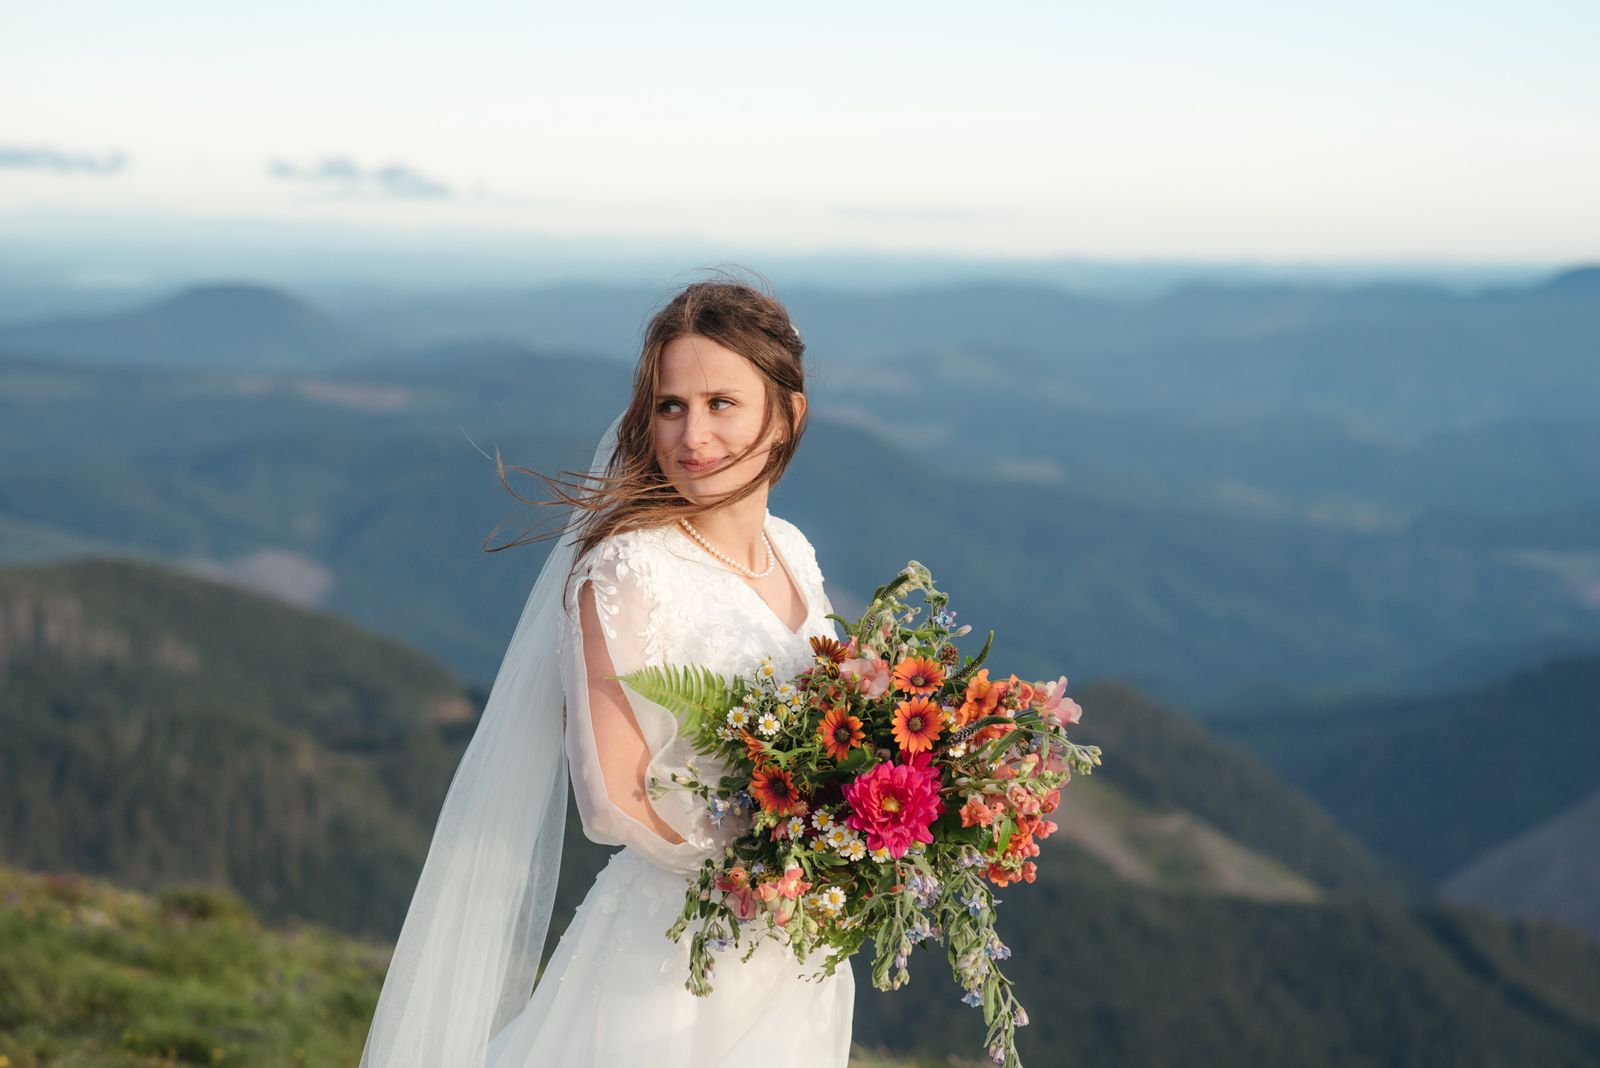 Mountain top bridal photos